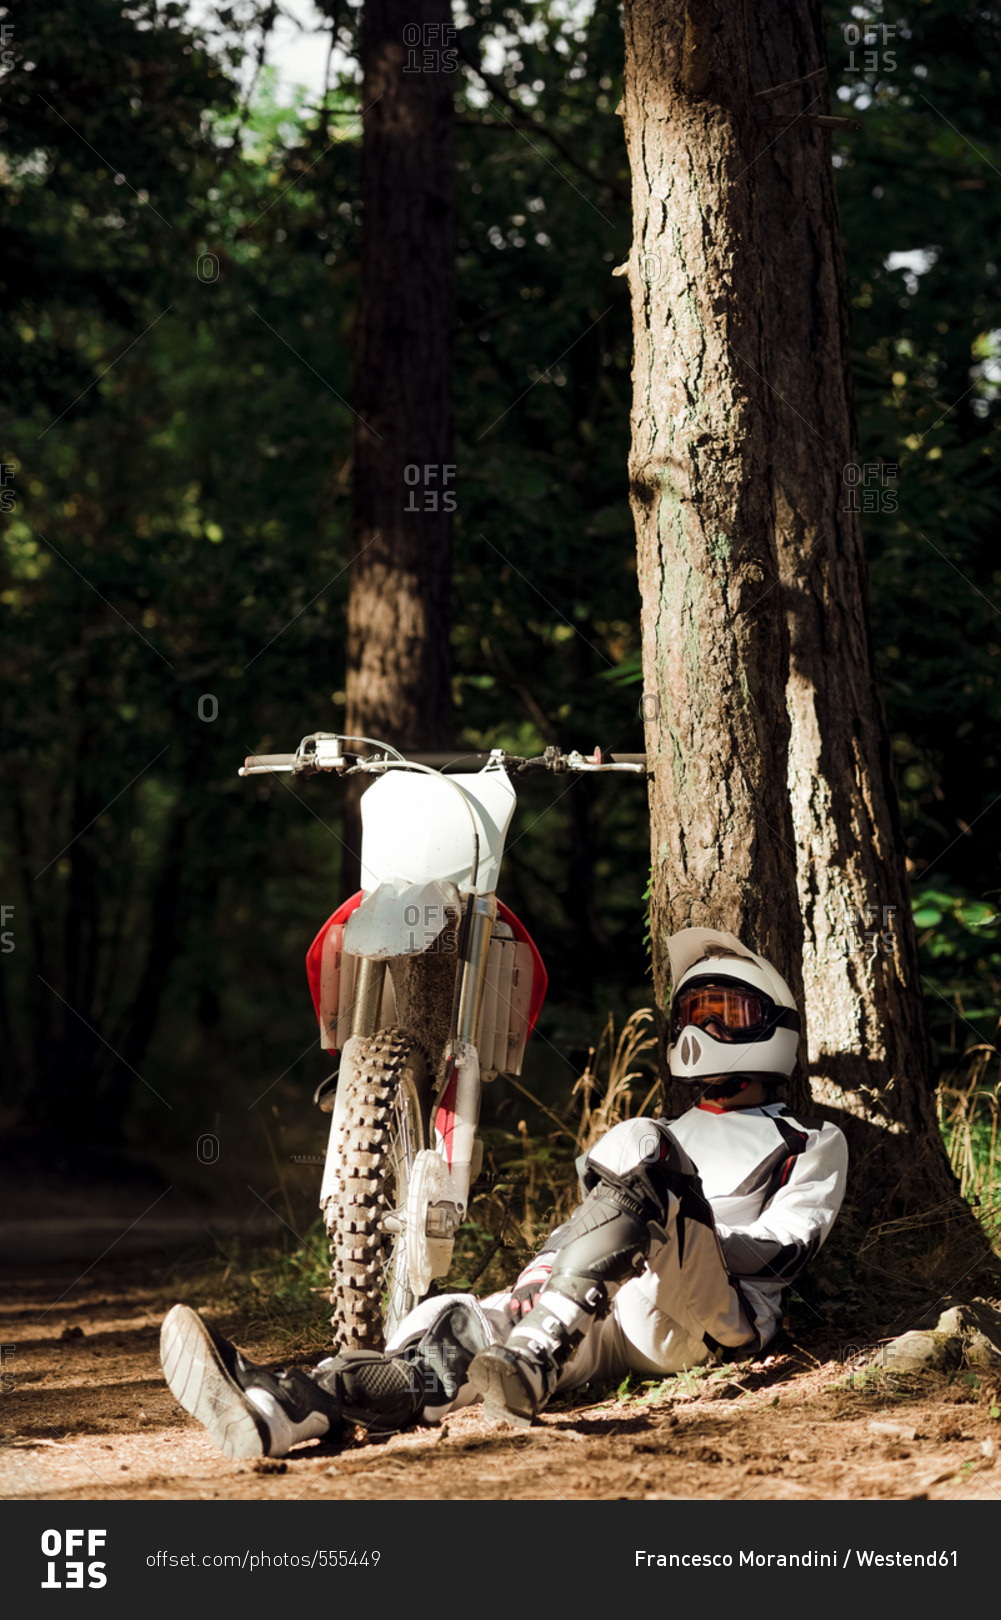 Italy- Motocross biker taking a break in Tuscan forest